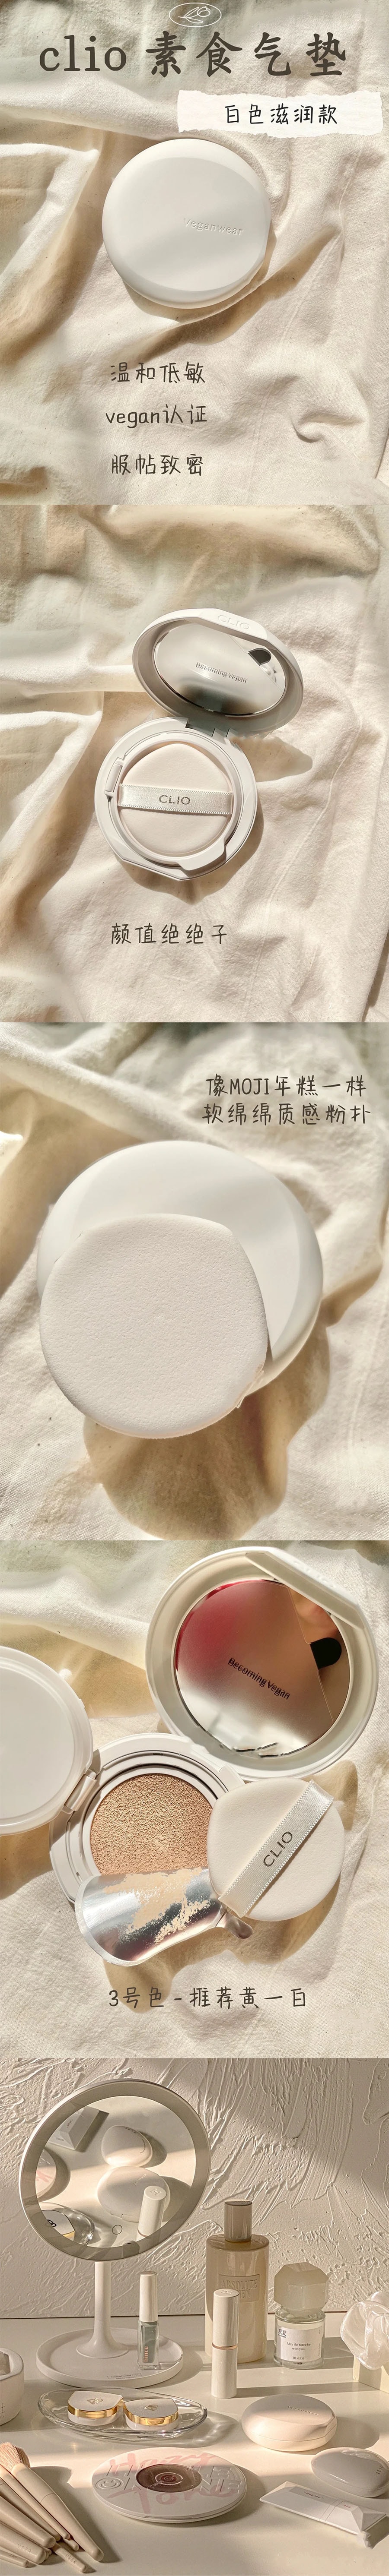 韓國 CLIO 珂萊歐 新款Veganwear素食主義水光氣墊 #04 自然膚色 含替換芯 15g*2